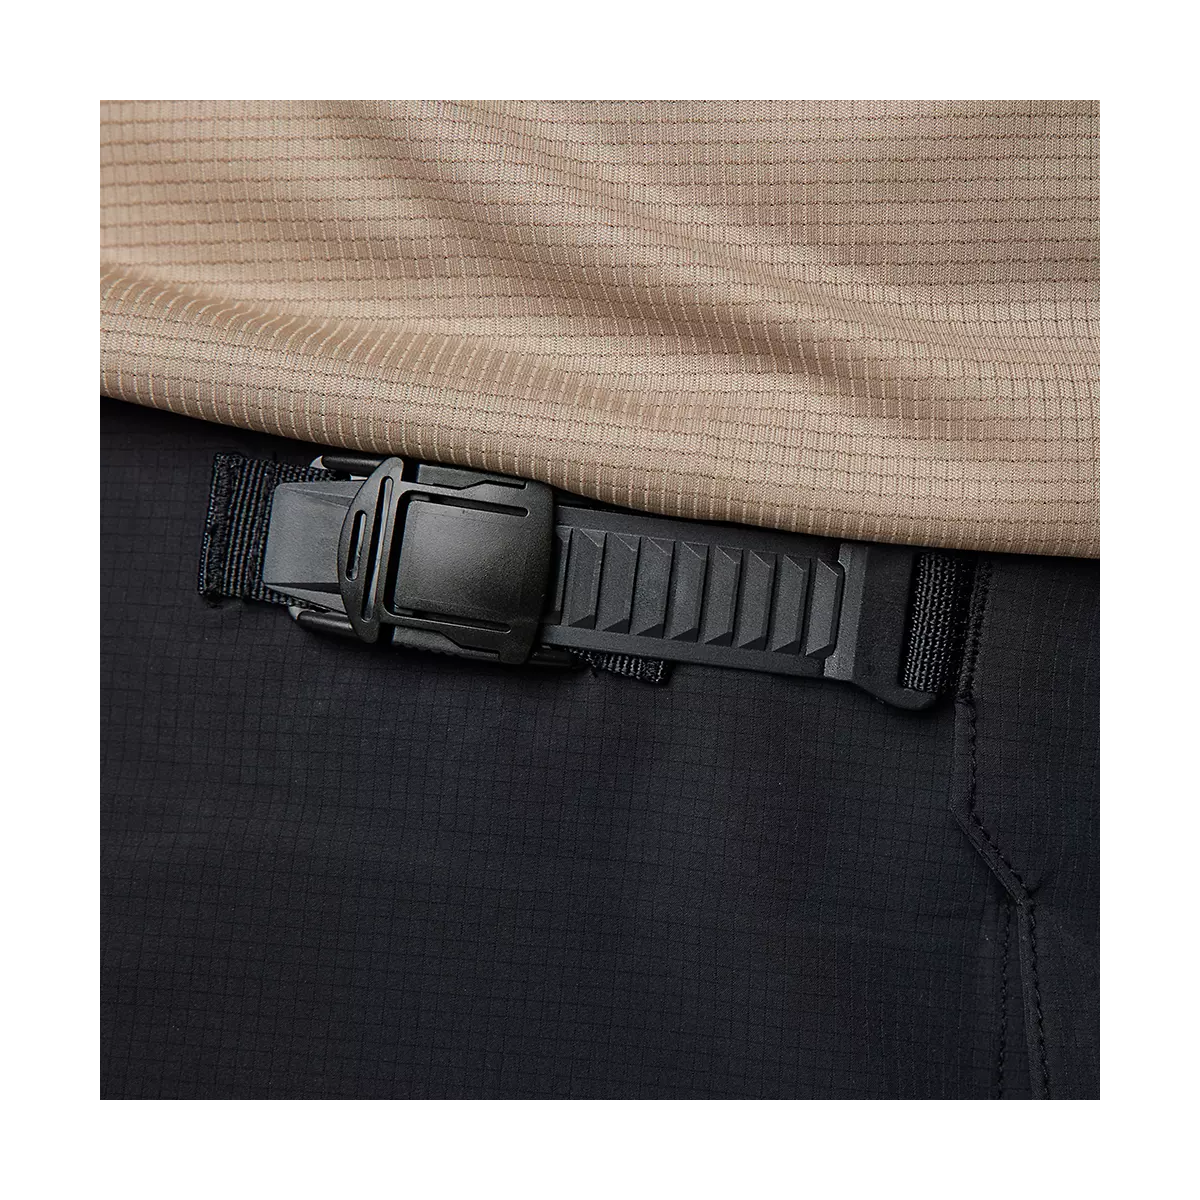 cierre de hebilla de Pantalón corto Fox Flexair Ascent en color negro  de tallaje estrecho 31019-001